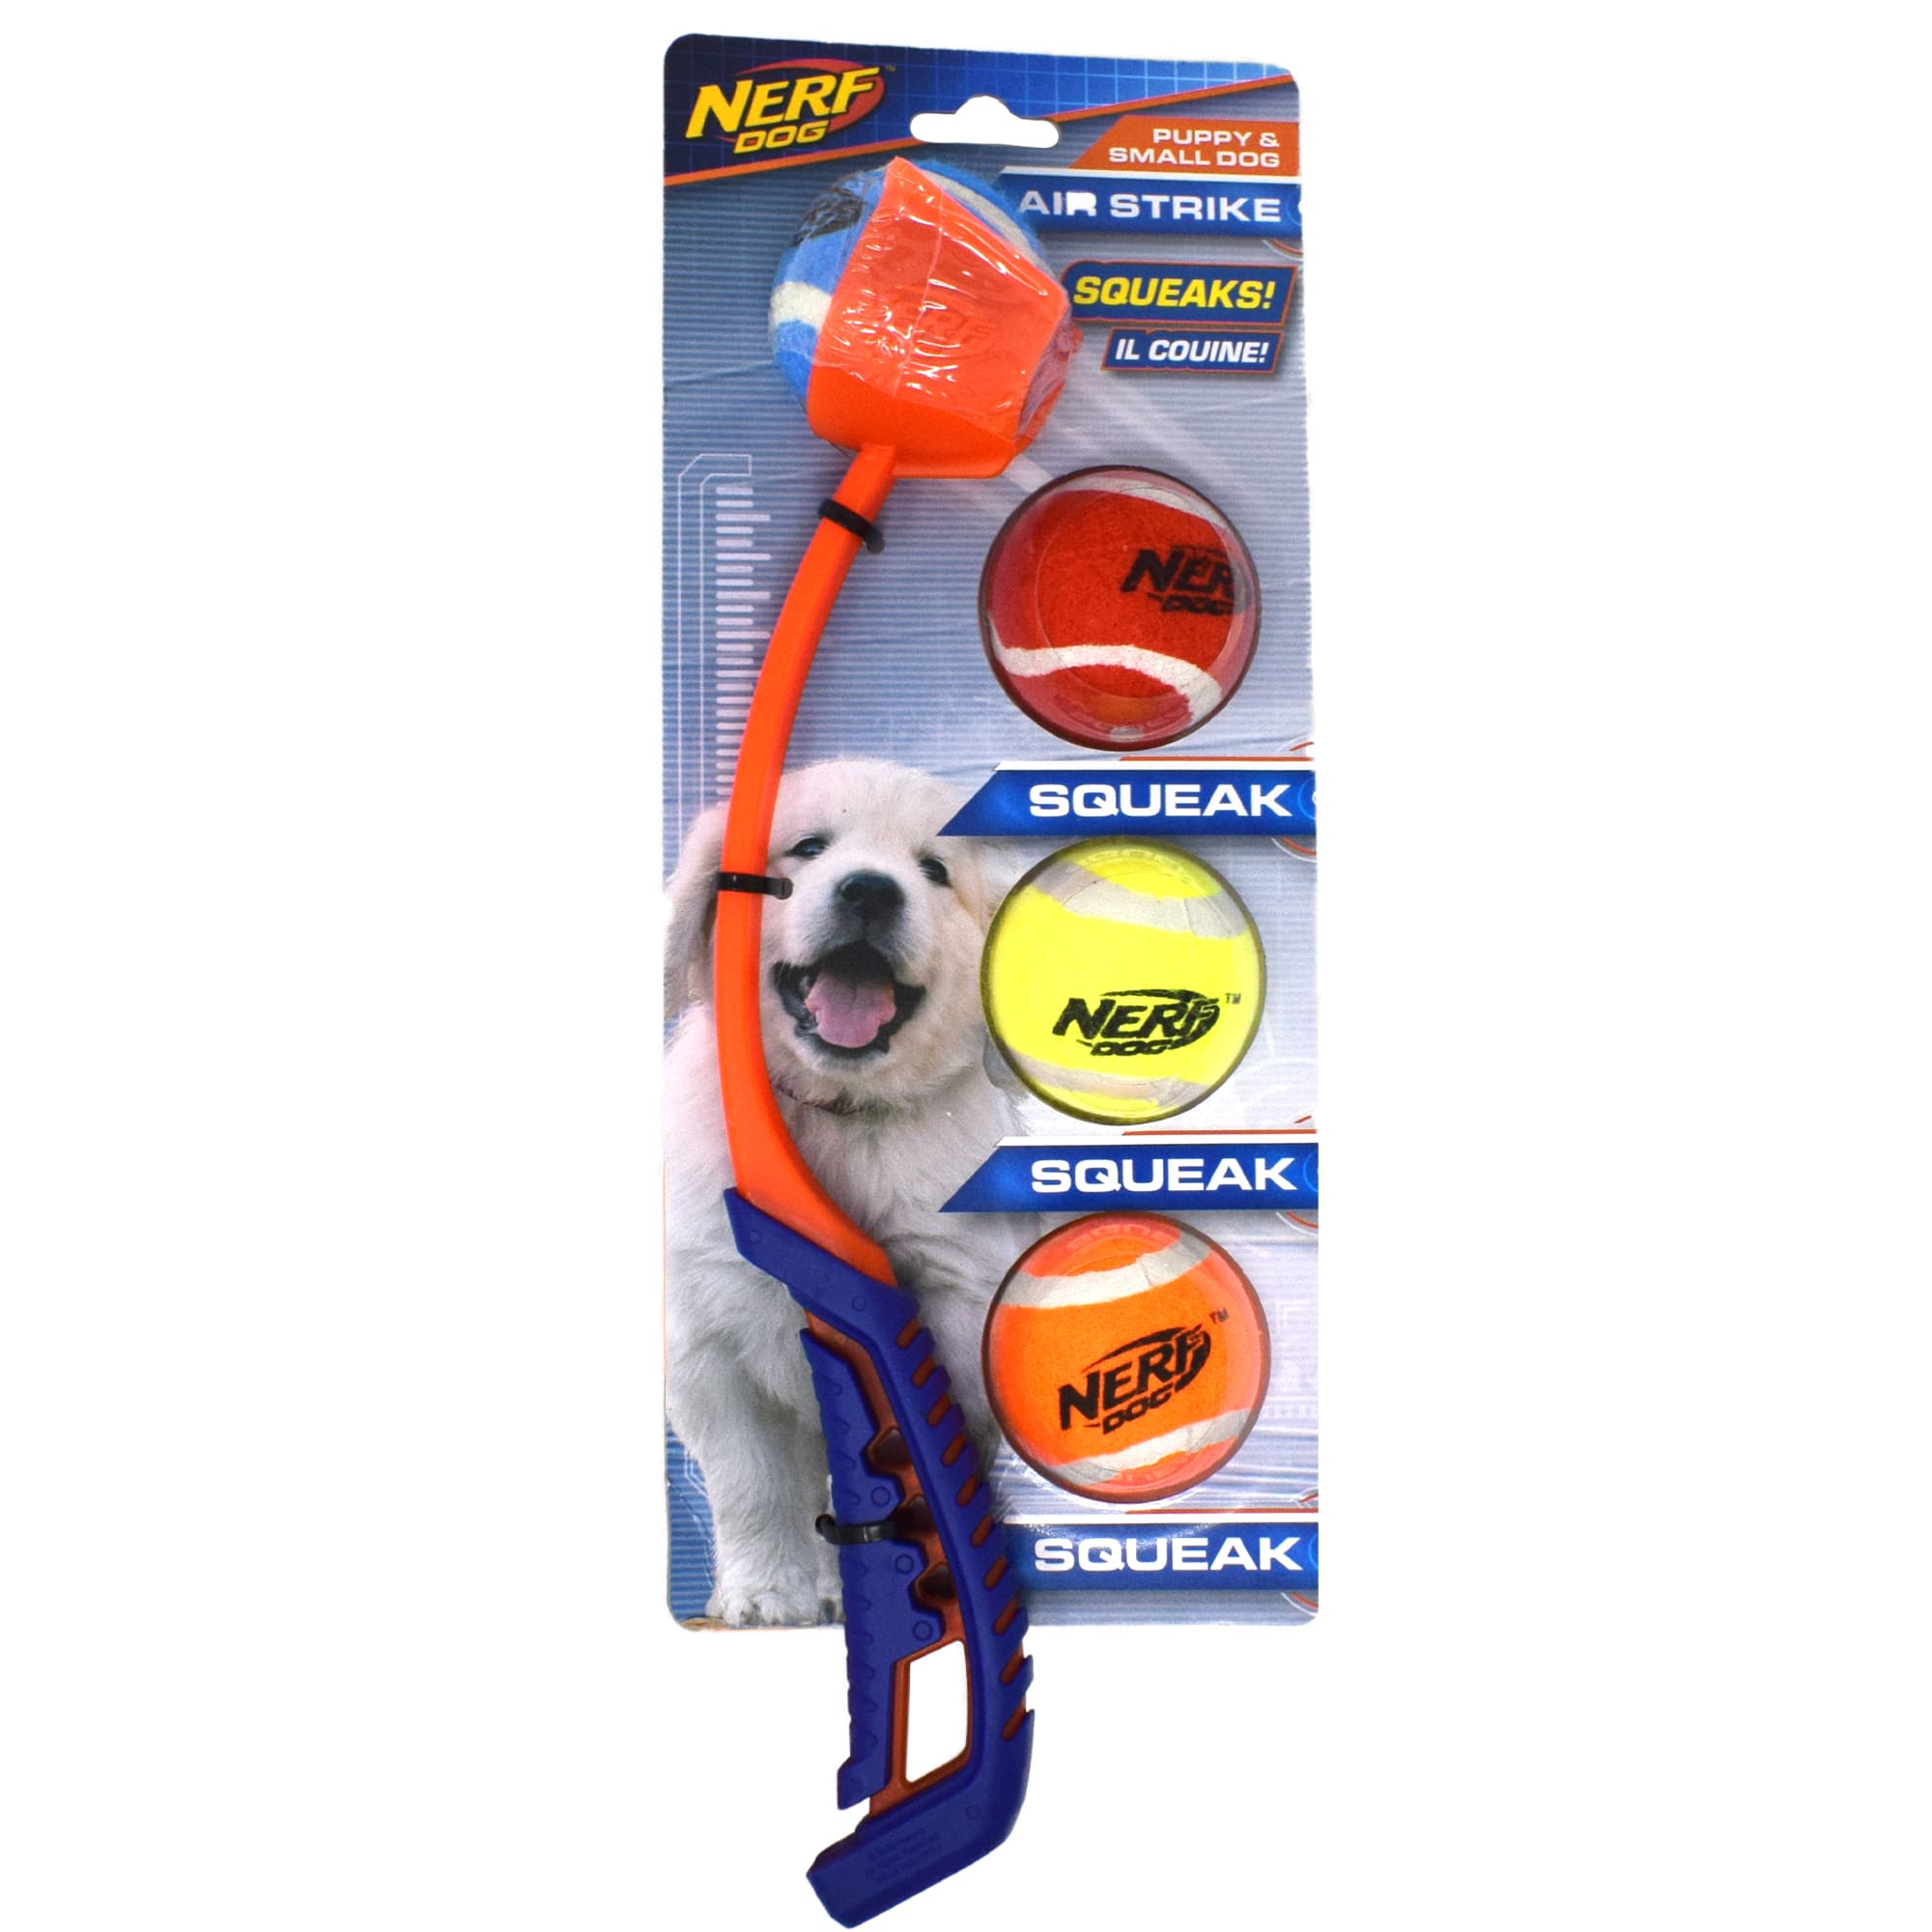 nerf tennis ball launcher